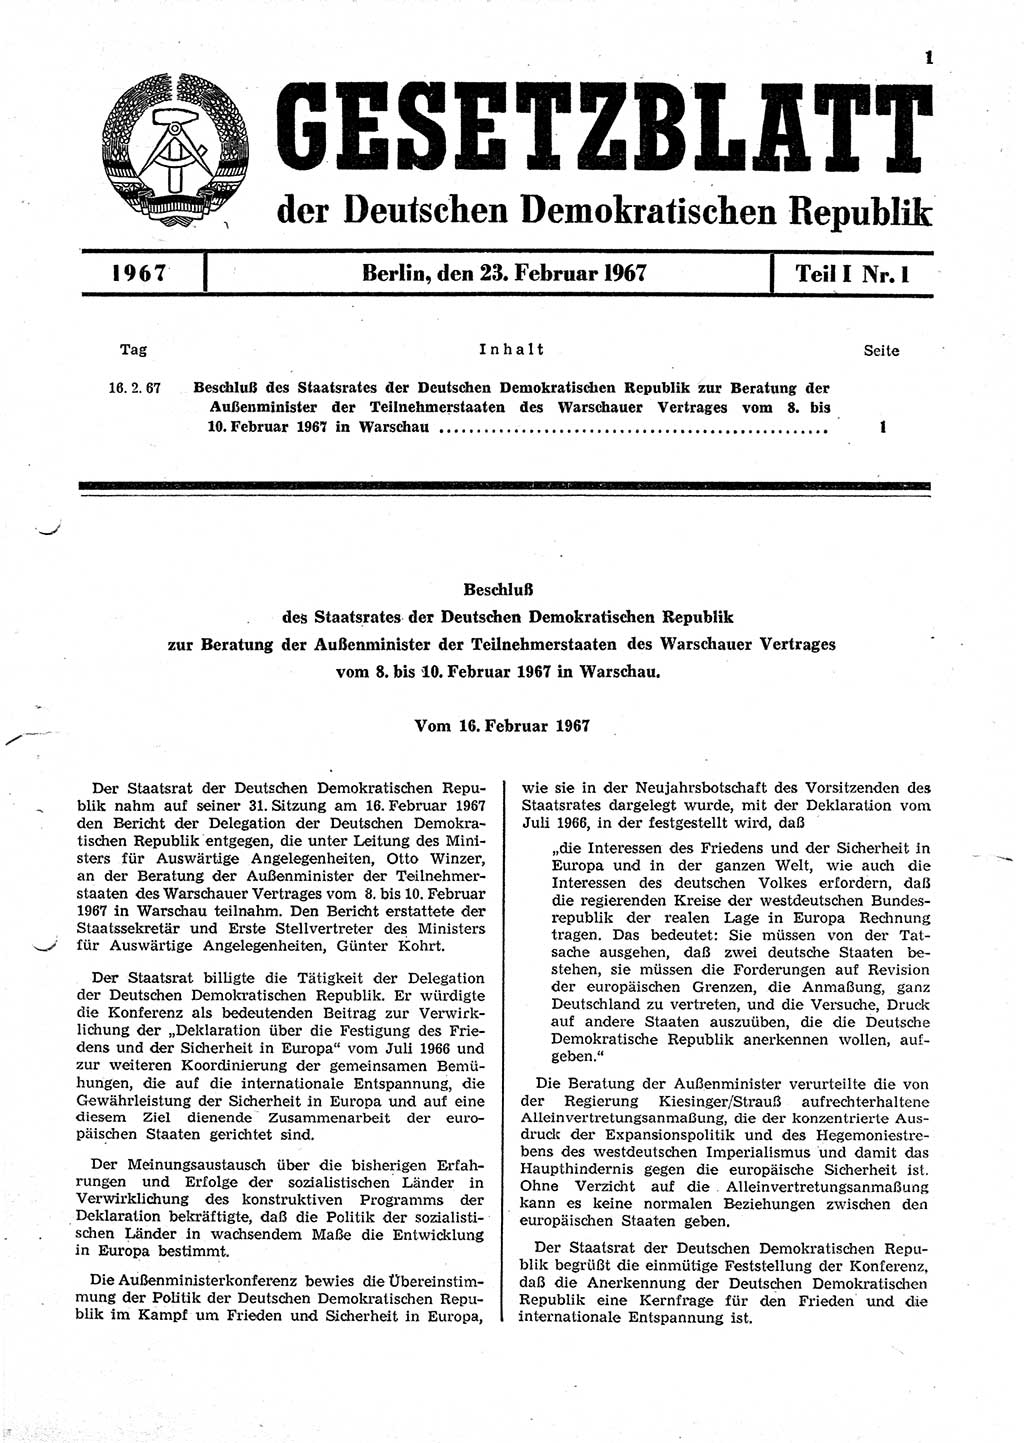 Gesetzblatt (GBl.) der Deutschen Demokratischen Republik (DDR) Teil Ⅰ 1967, Seite 1 (GBl. DDR Ⅰ 1967, S. 1)